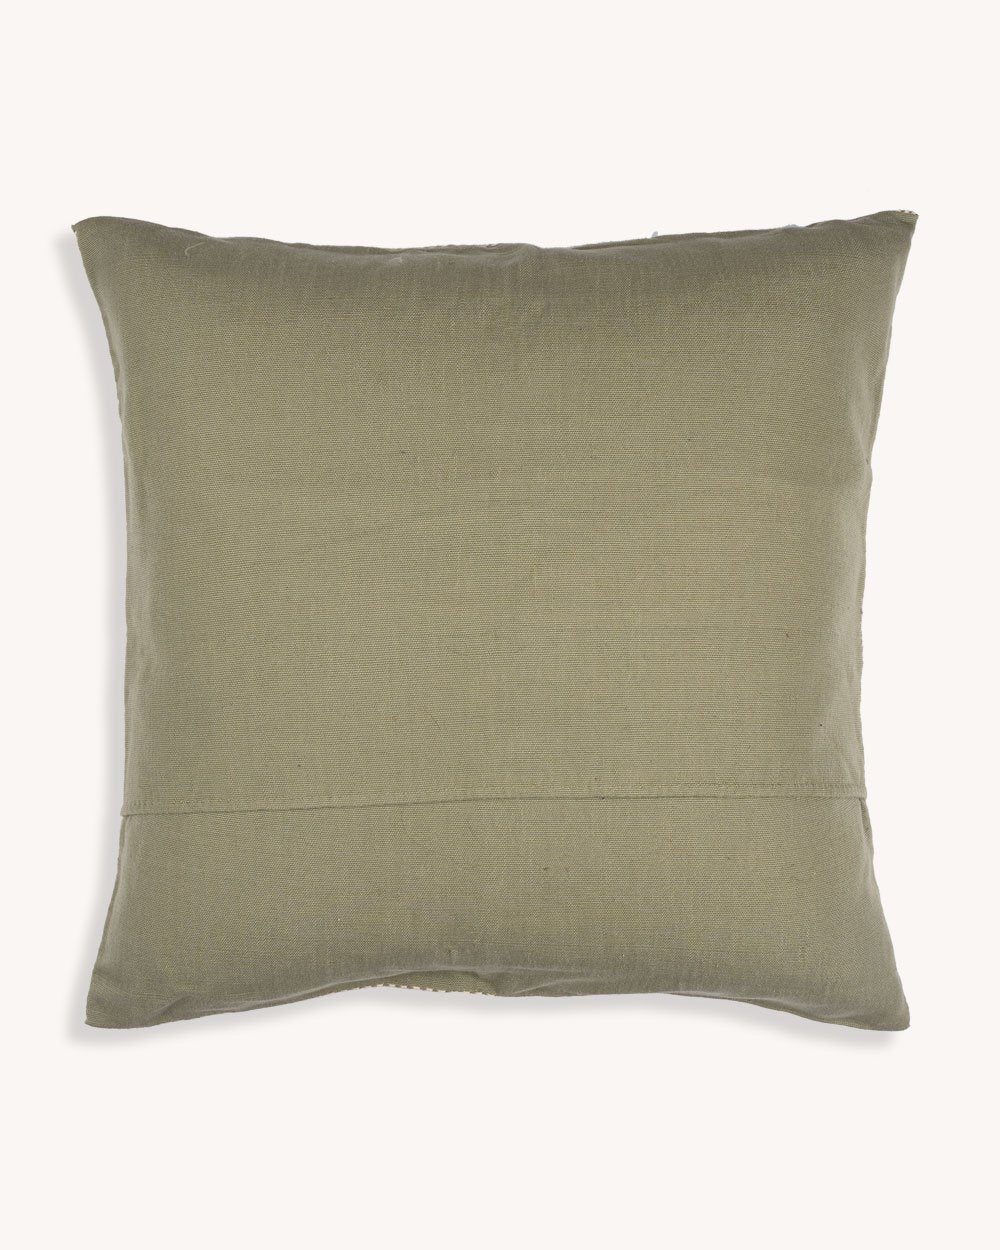 Zuma Handwoven Cushion Cover